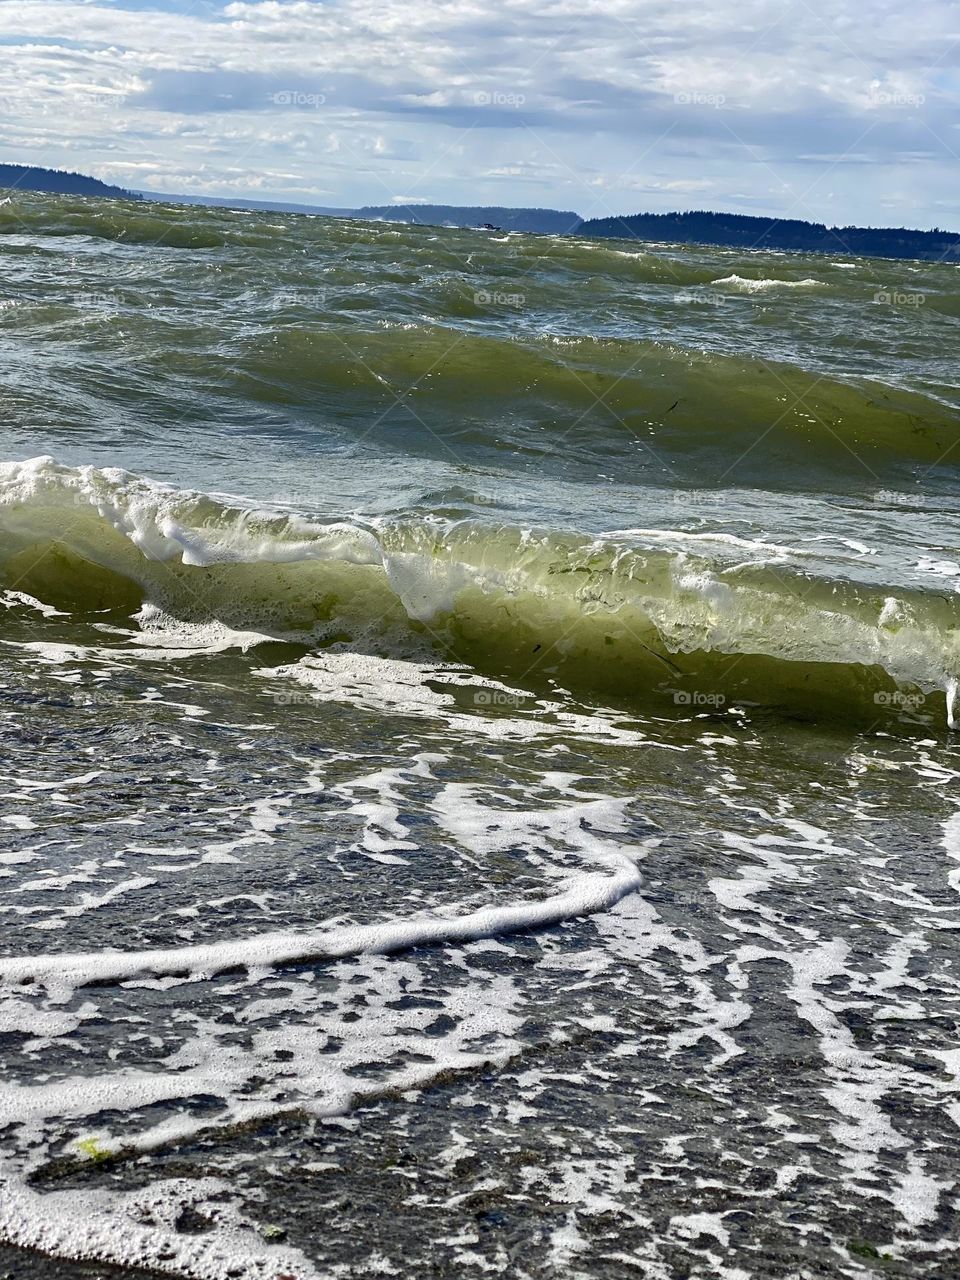 Beach waves 